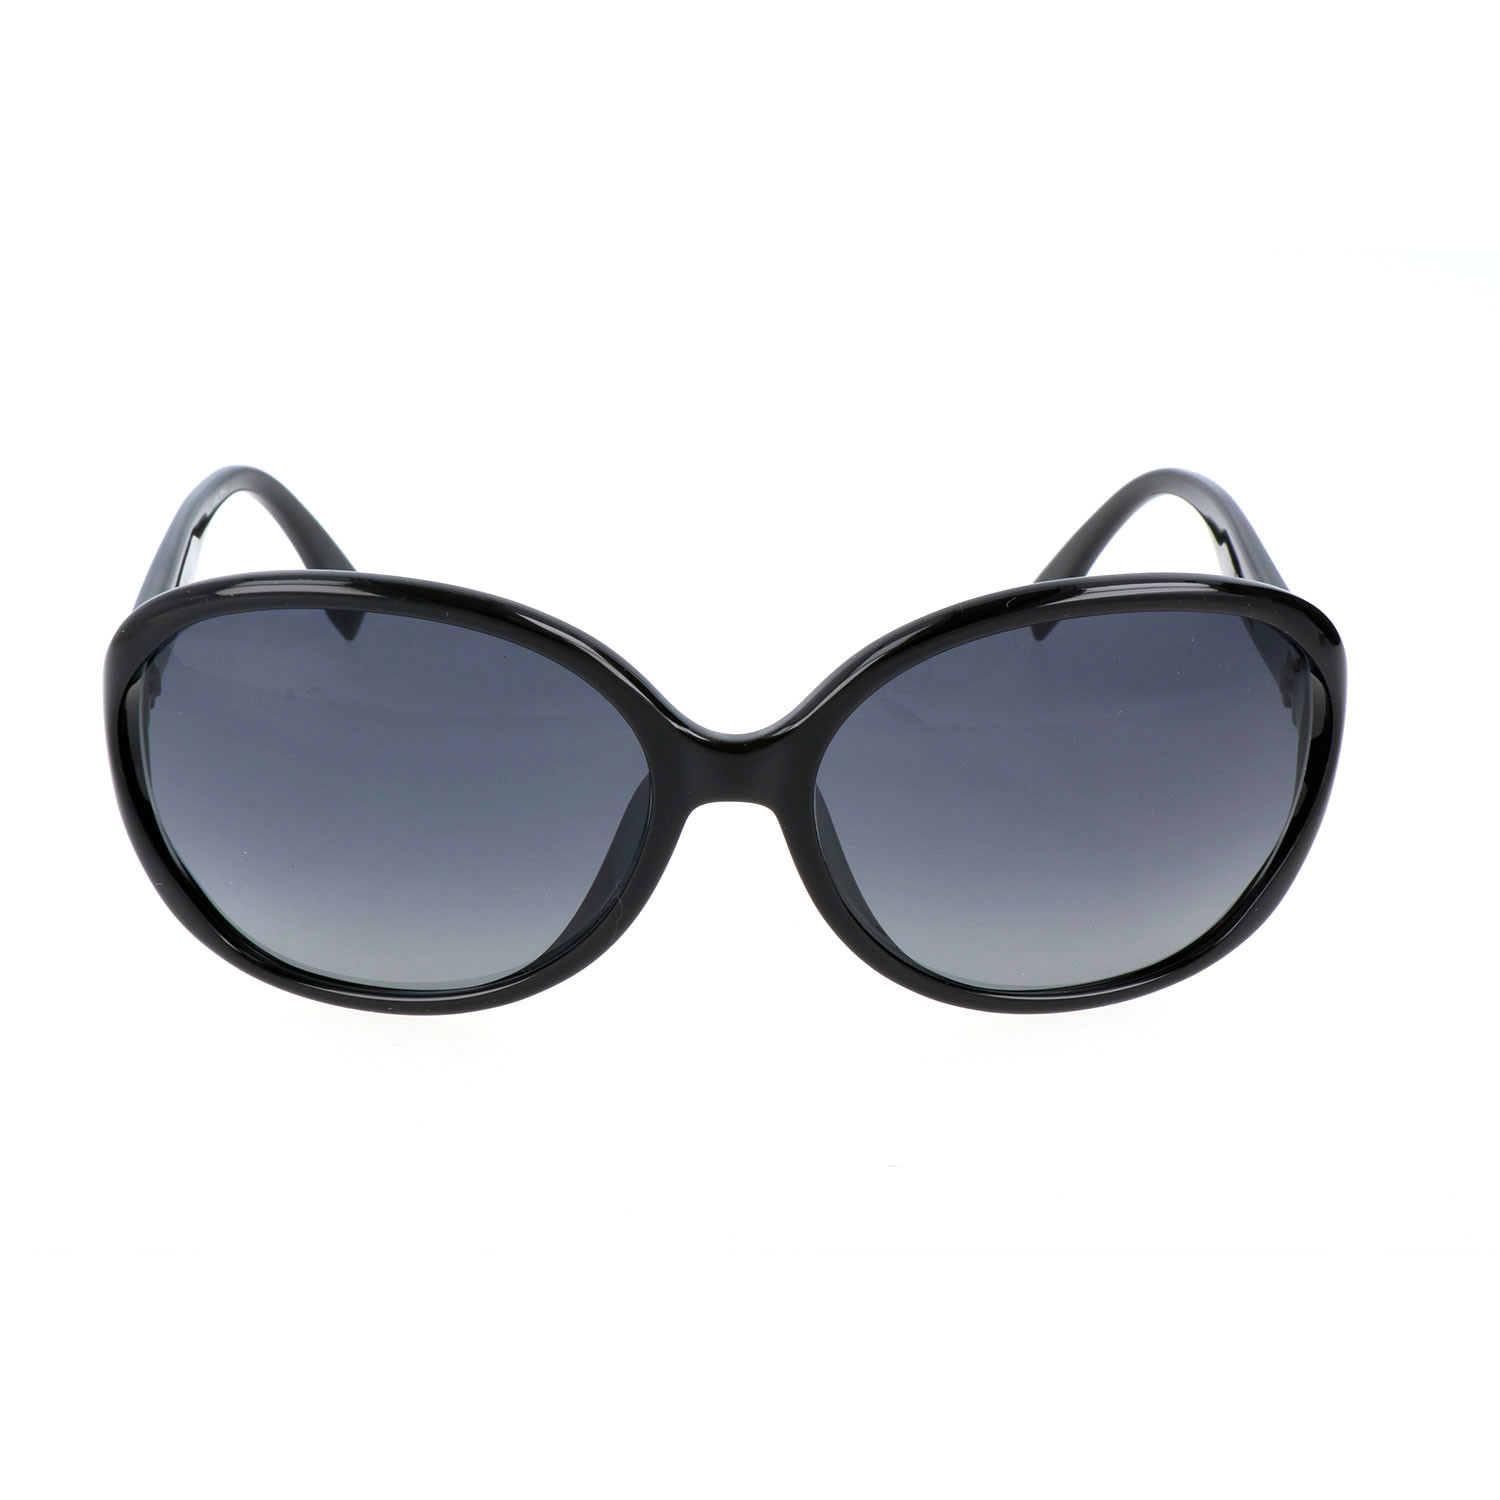 Fendi // Women's FF0032 Sunglasses // Shiny Black - Fendi & Jimmy Choo ...